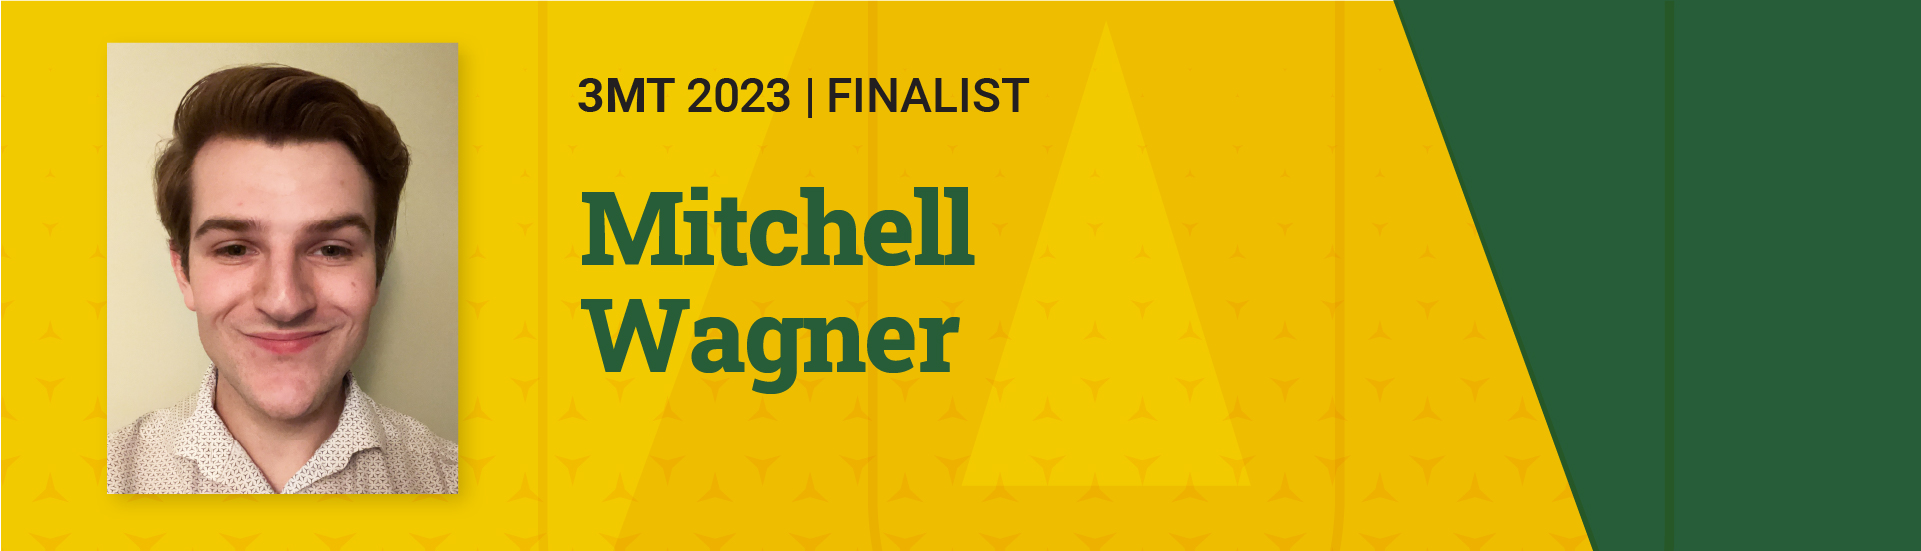 3MT 2023 Finalist  Mitchell Wagner 